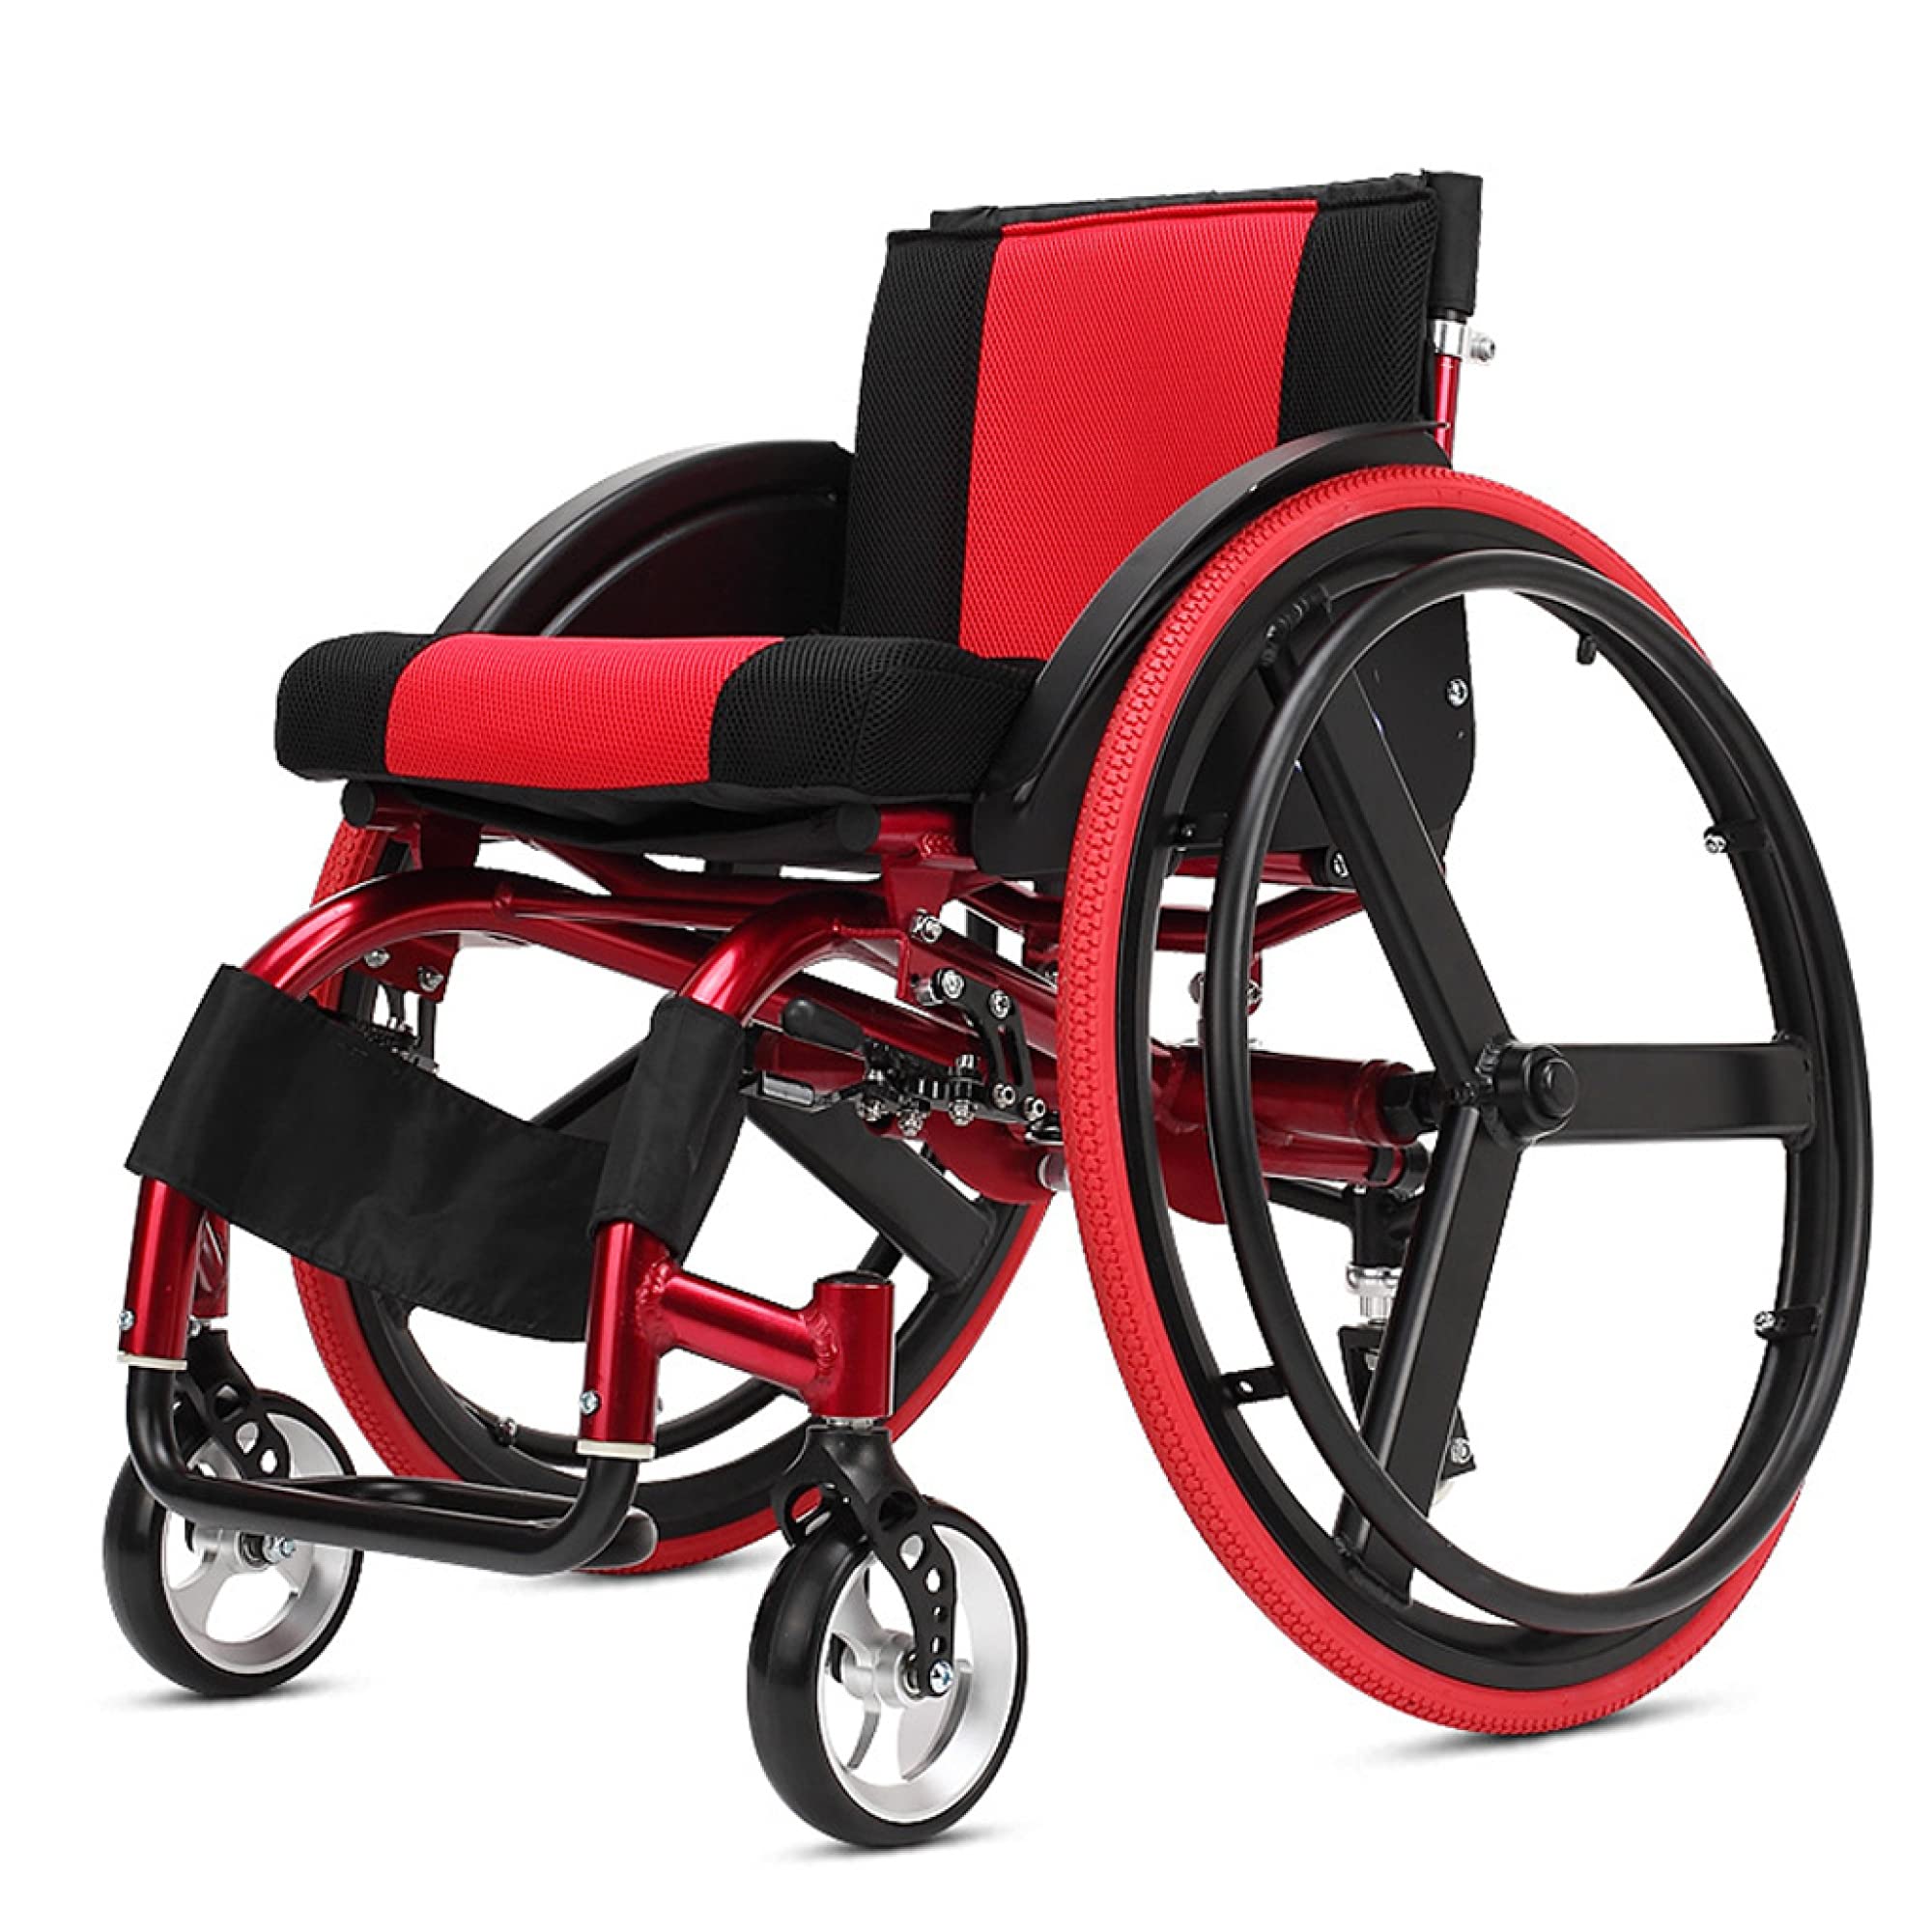 TTWUJIN Für Ältere Rollstuhl Bewegung Erwachsene Manueller Selbstantrieb Leichtgewichtige Faltbare Aluminium Fortgeschrittene Stoßdämpfung Stoßen Unbequem Anwendbar Kinder Zerebralparese Gemü